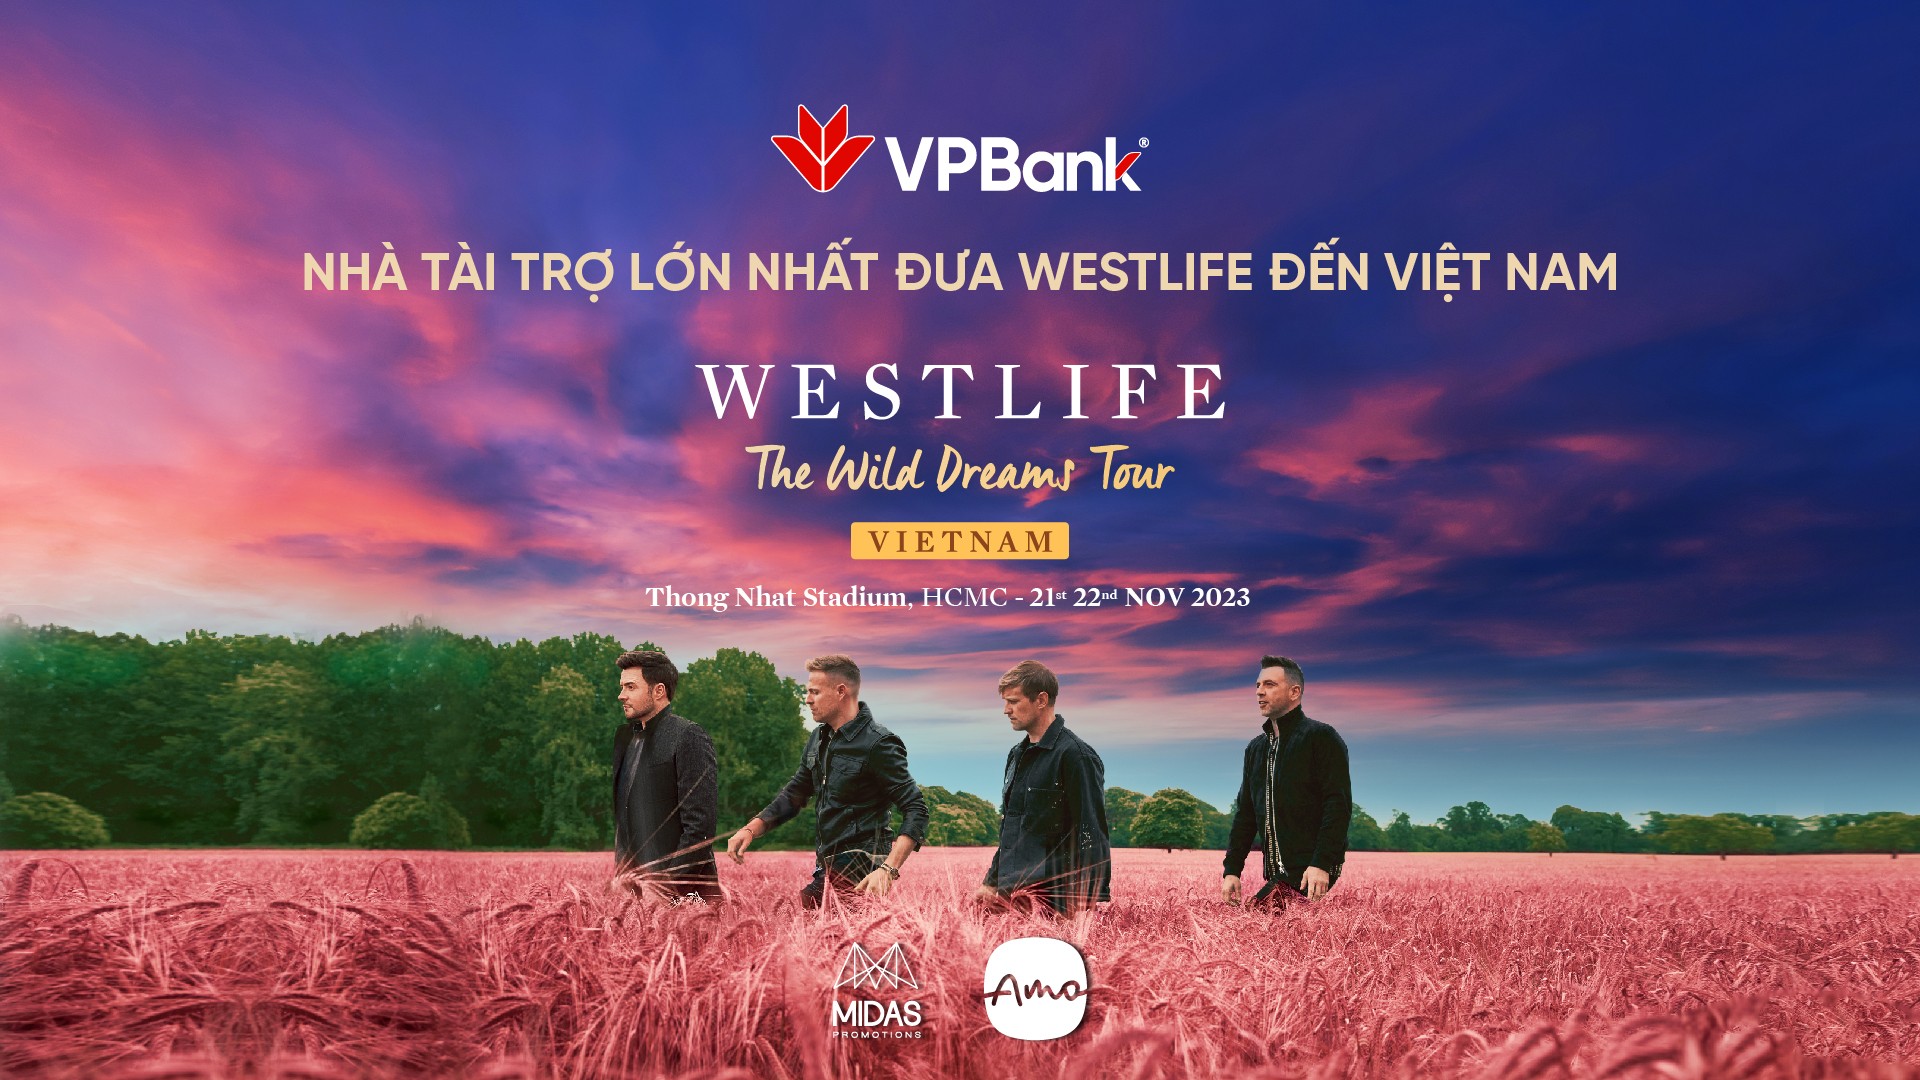 vpbank-westlife-kv-official-1697856905.jpg